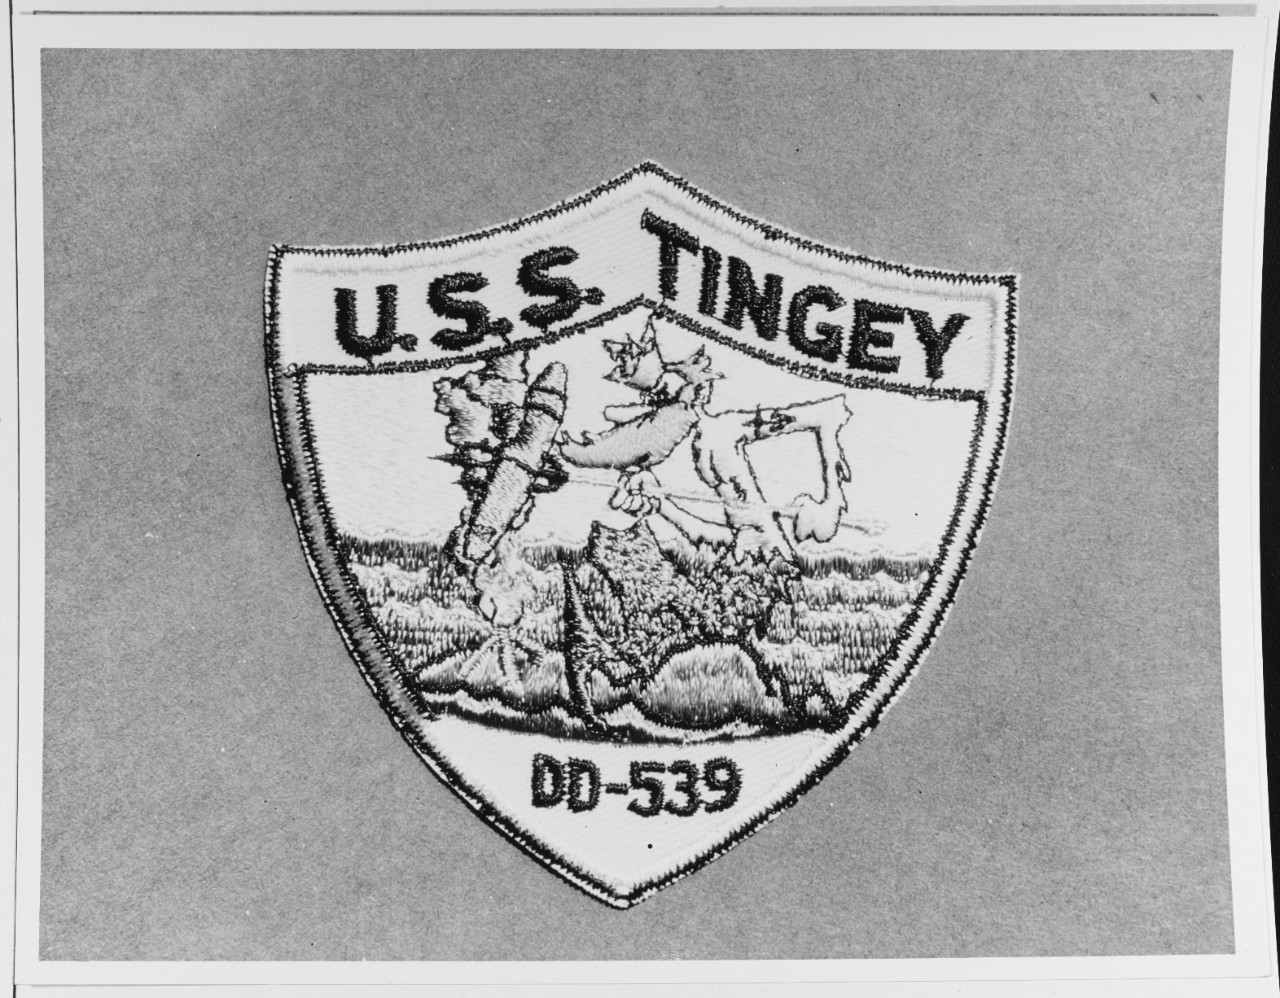 Insignia:  USS TINGEY (DD-539)